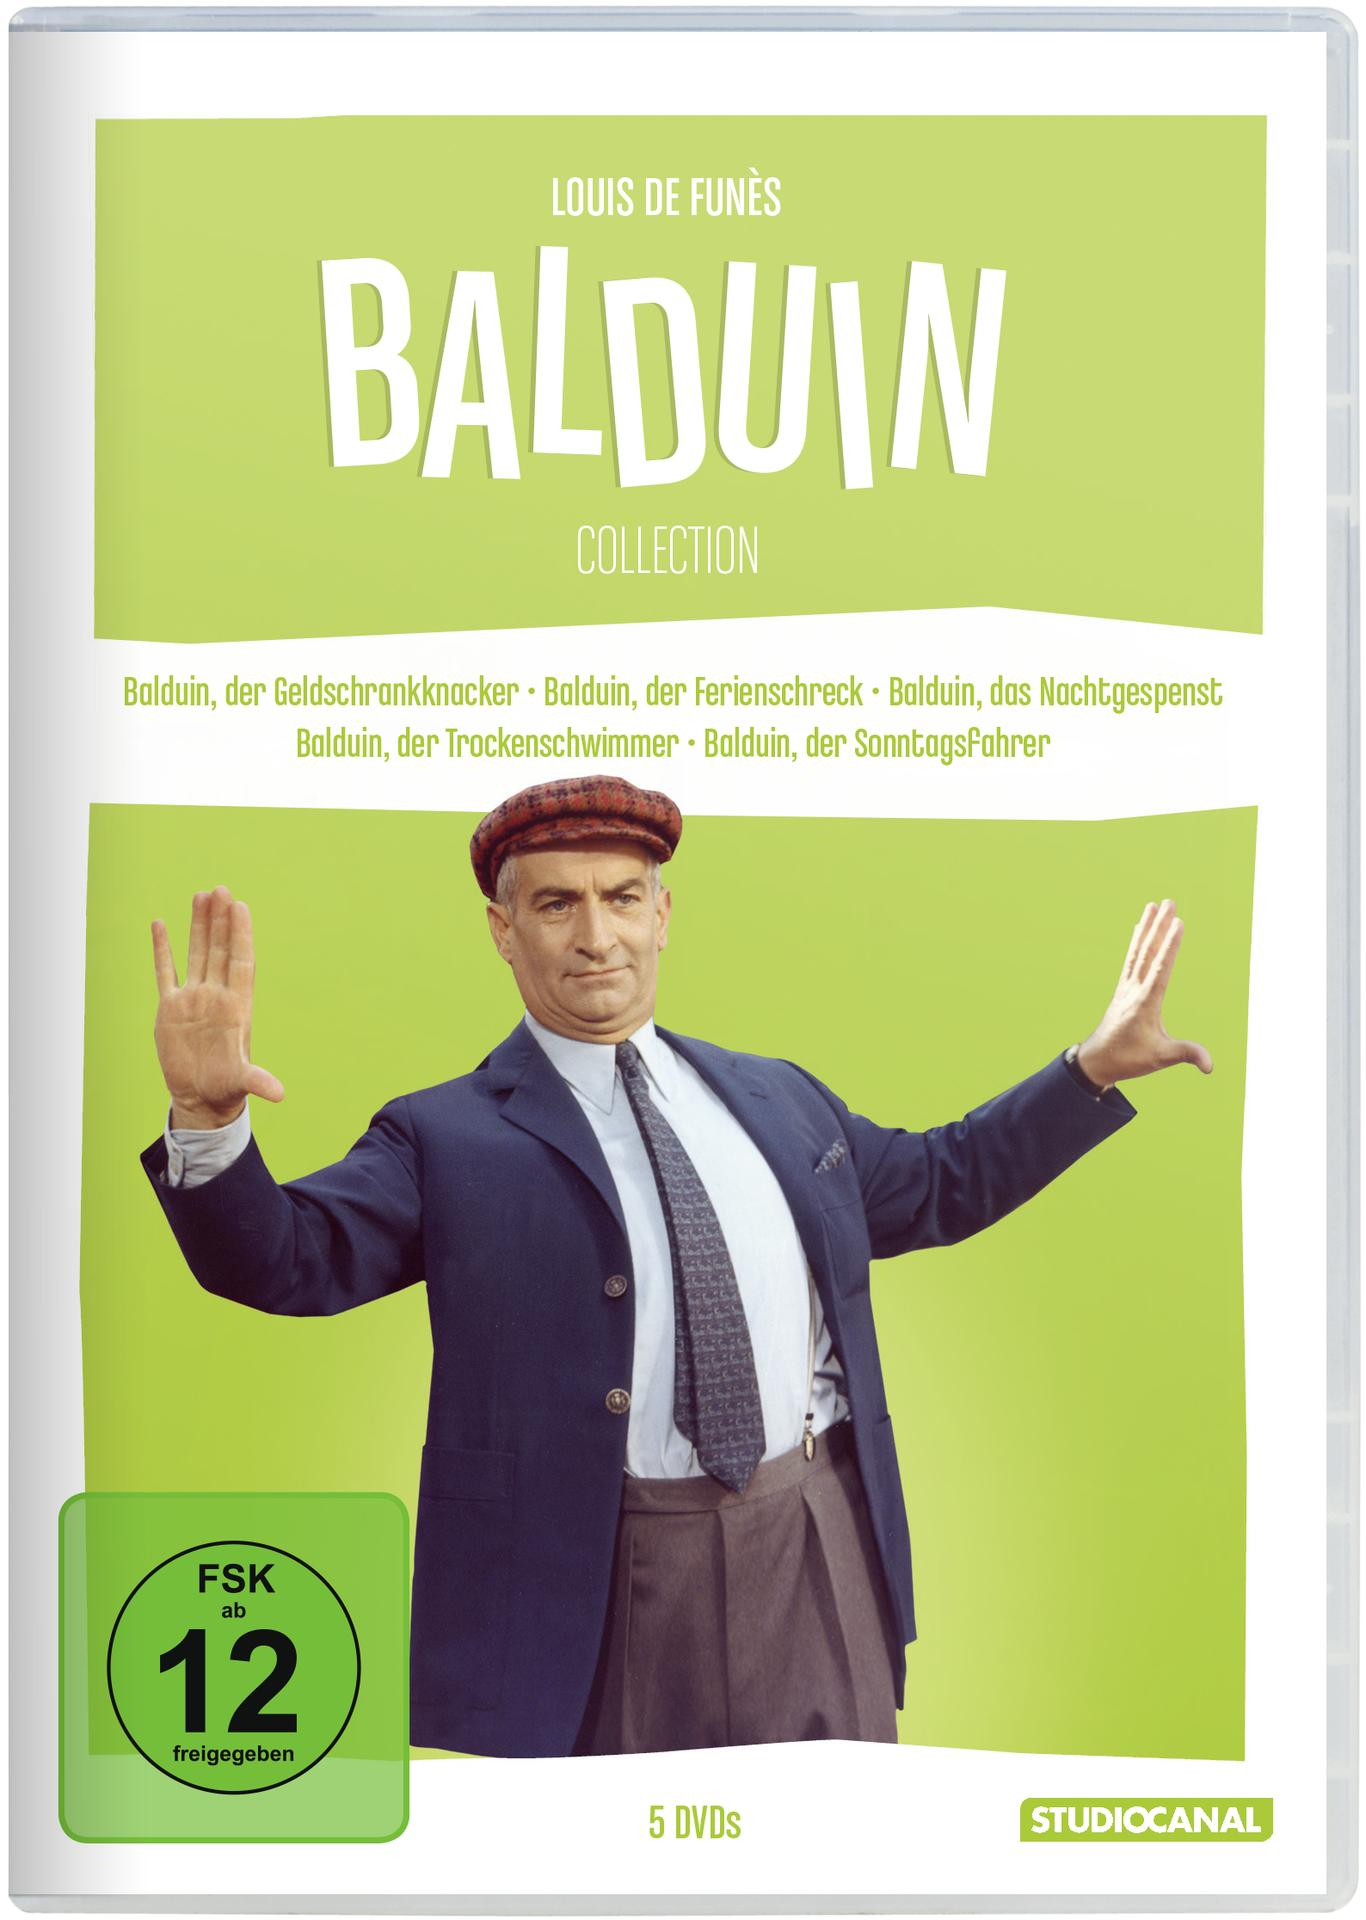 Balduin Louis / Collection Die DVD Funès de